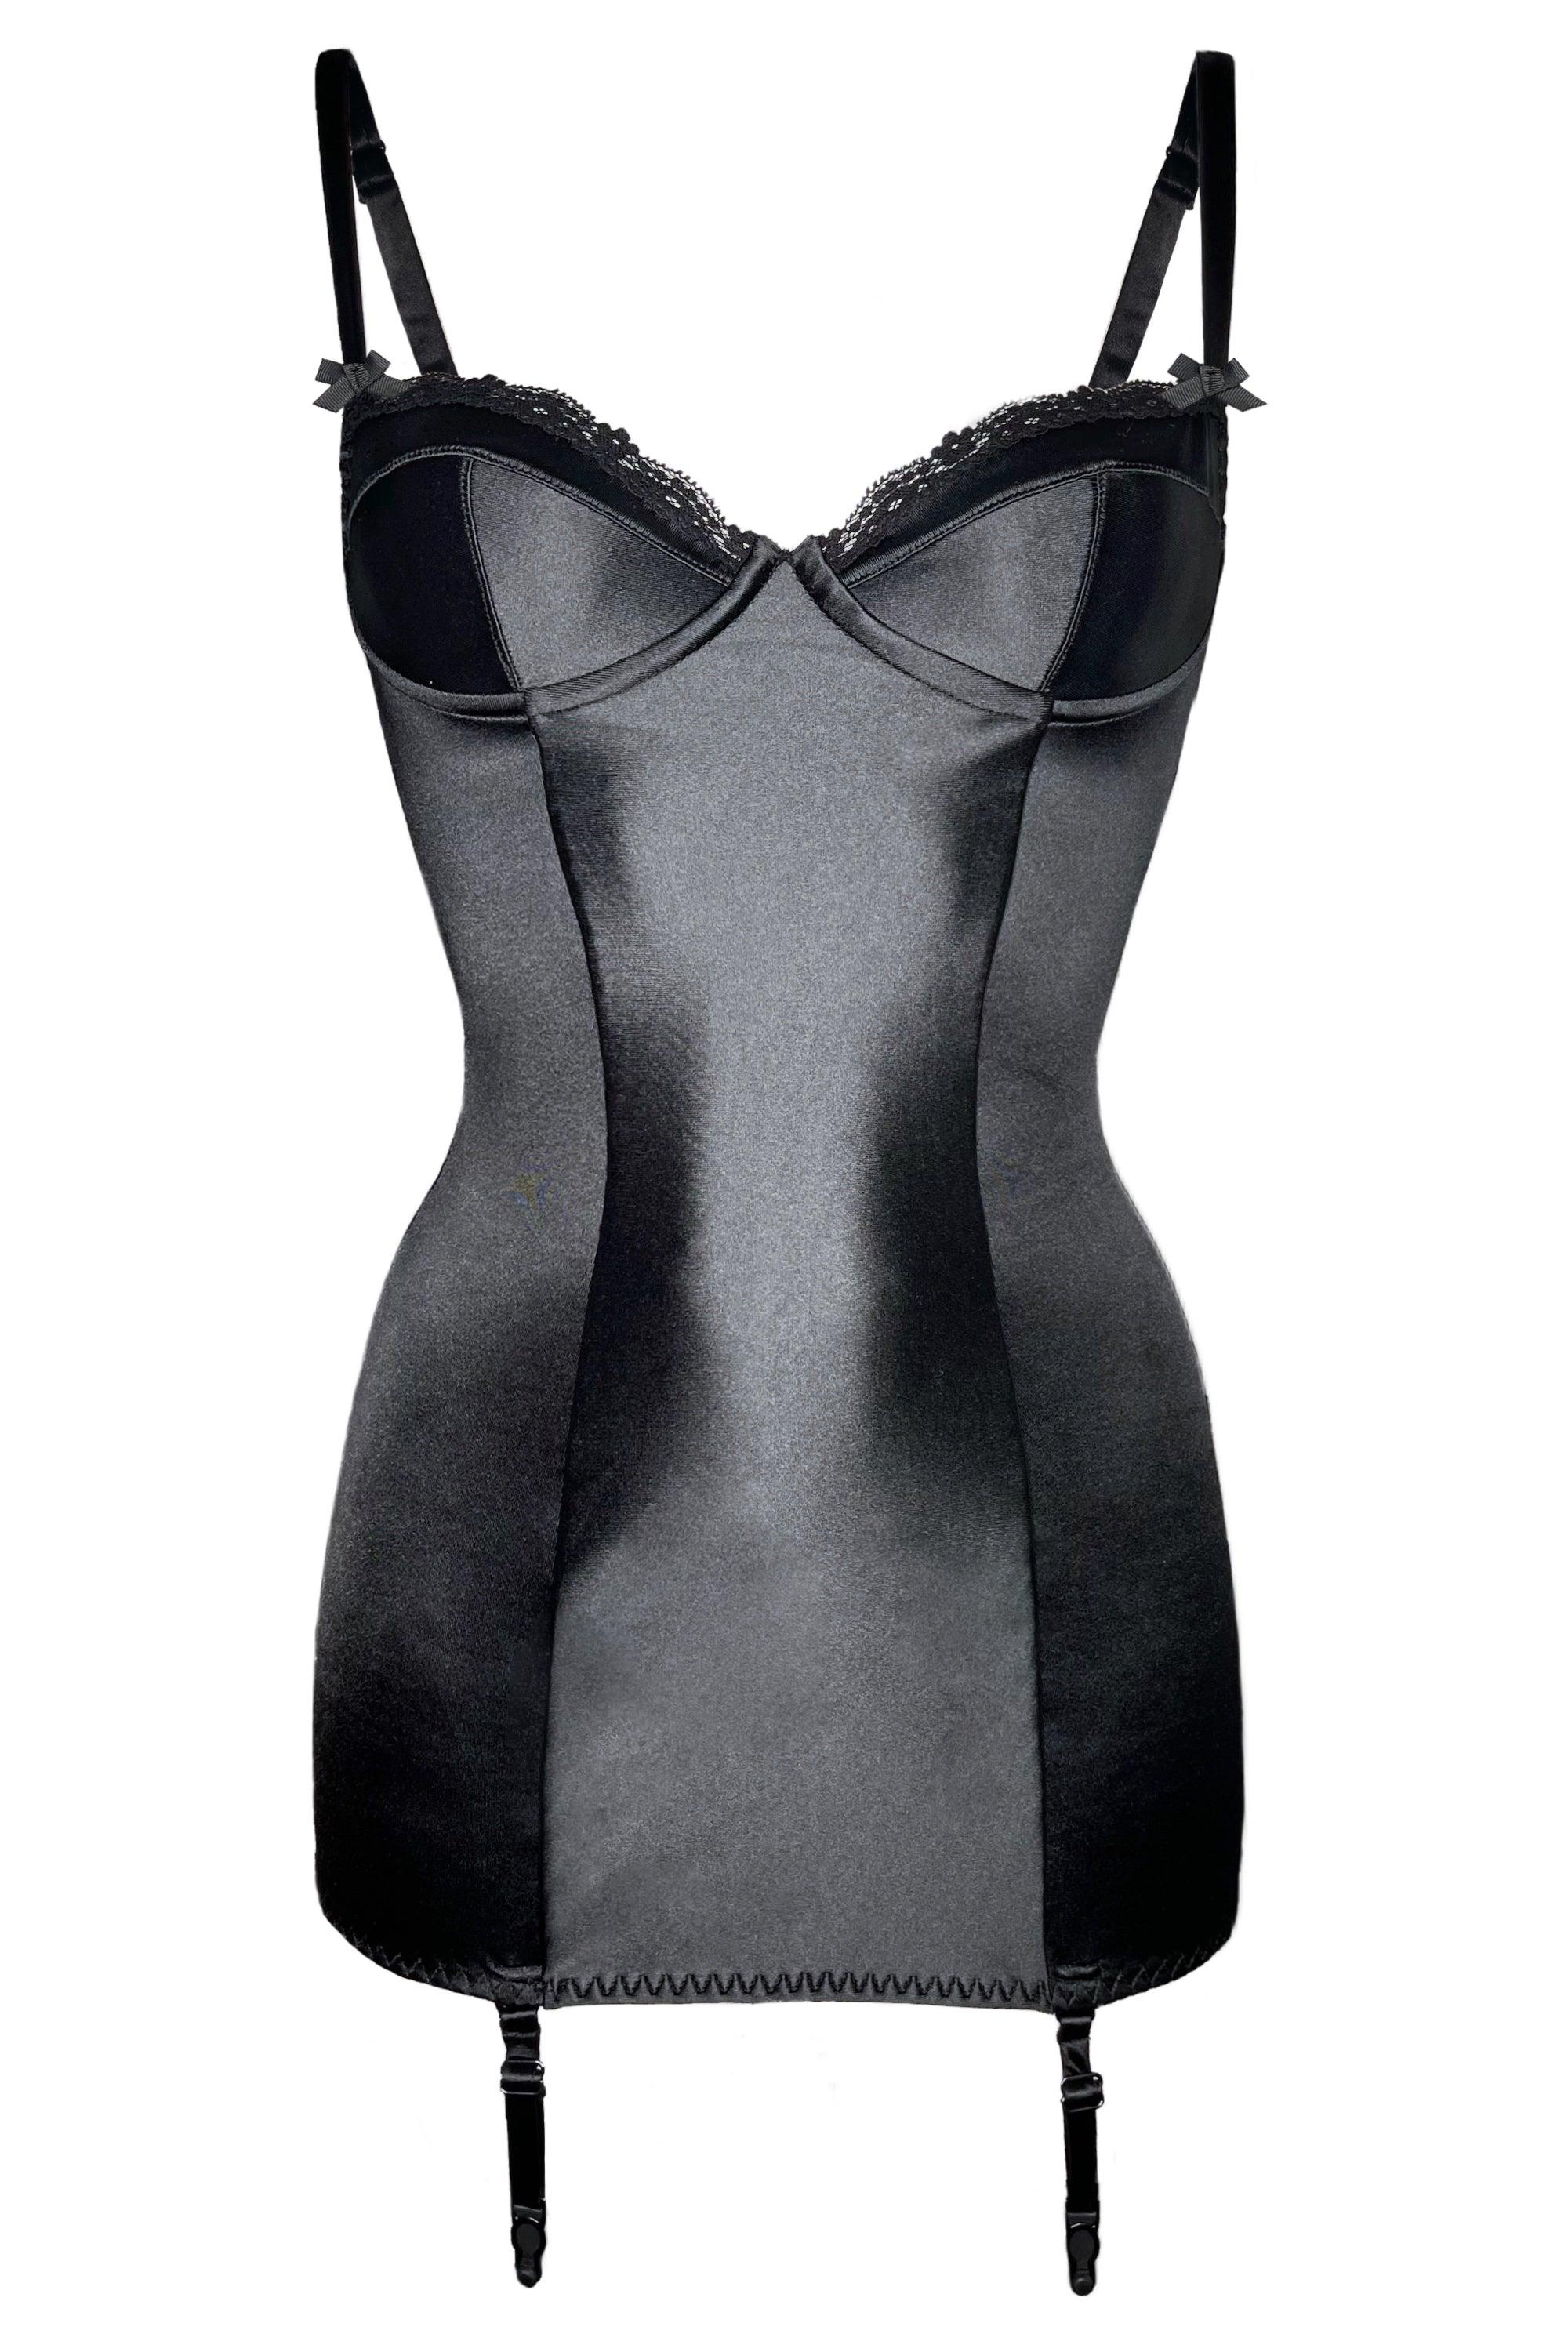 Valessa Gloss Black garter dress - yesUndress